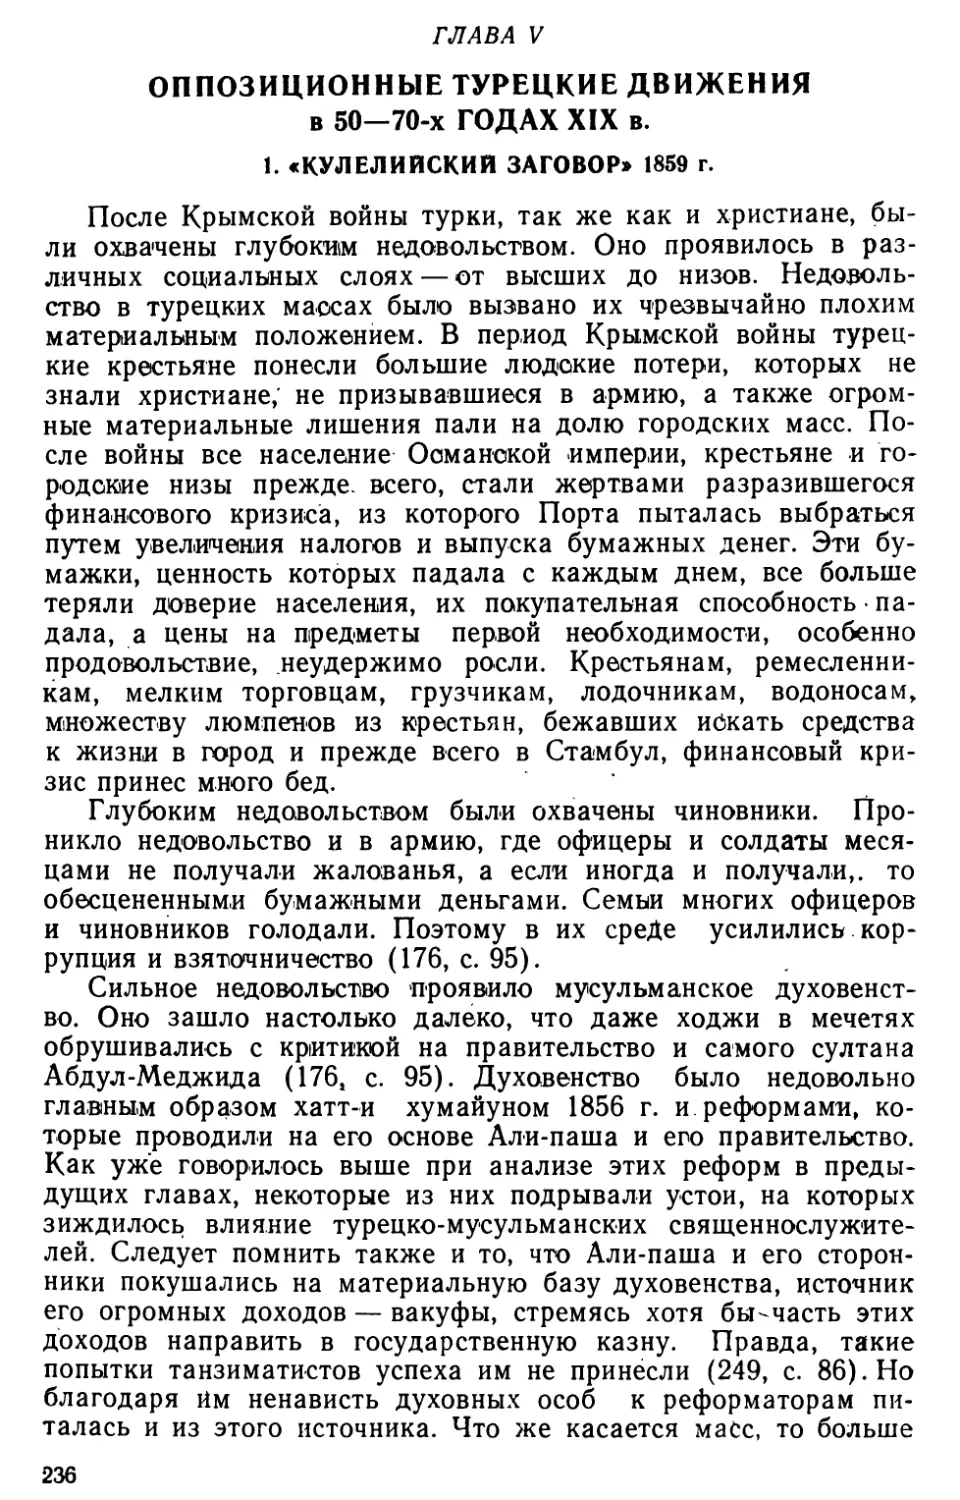 Глава V. Оппозиционные турецкие движения в 50‒70-х годах XIX в.